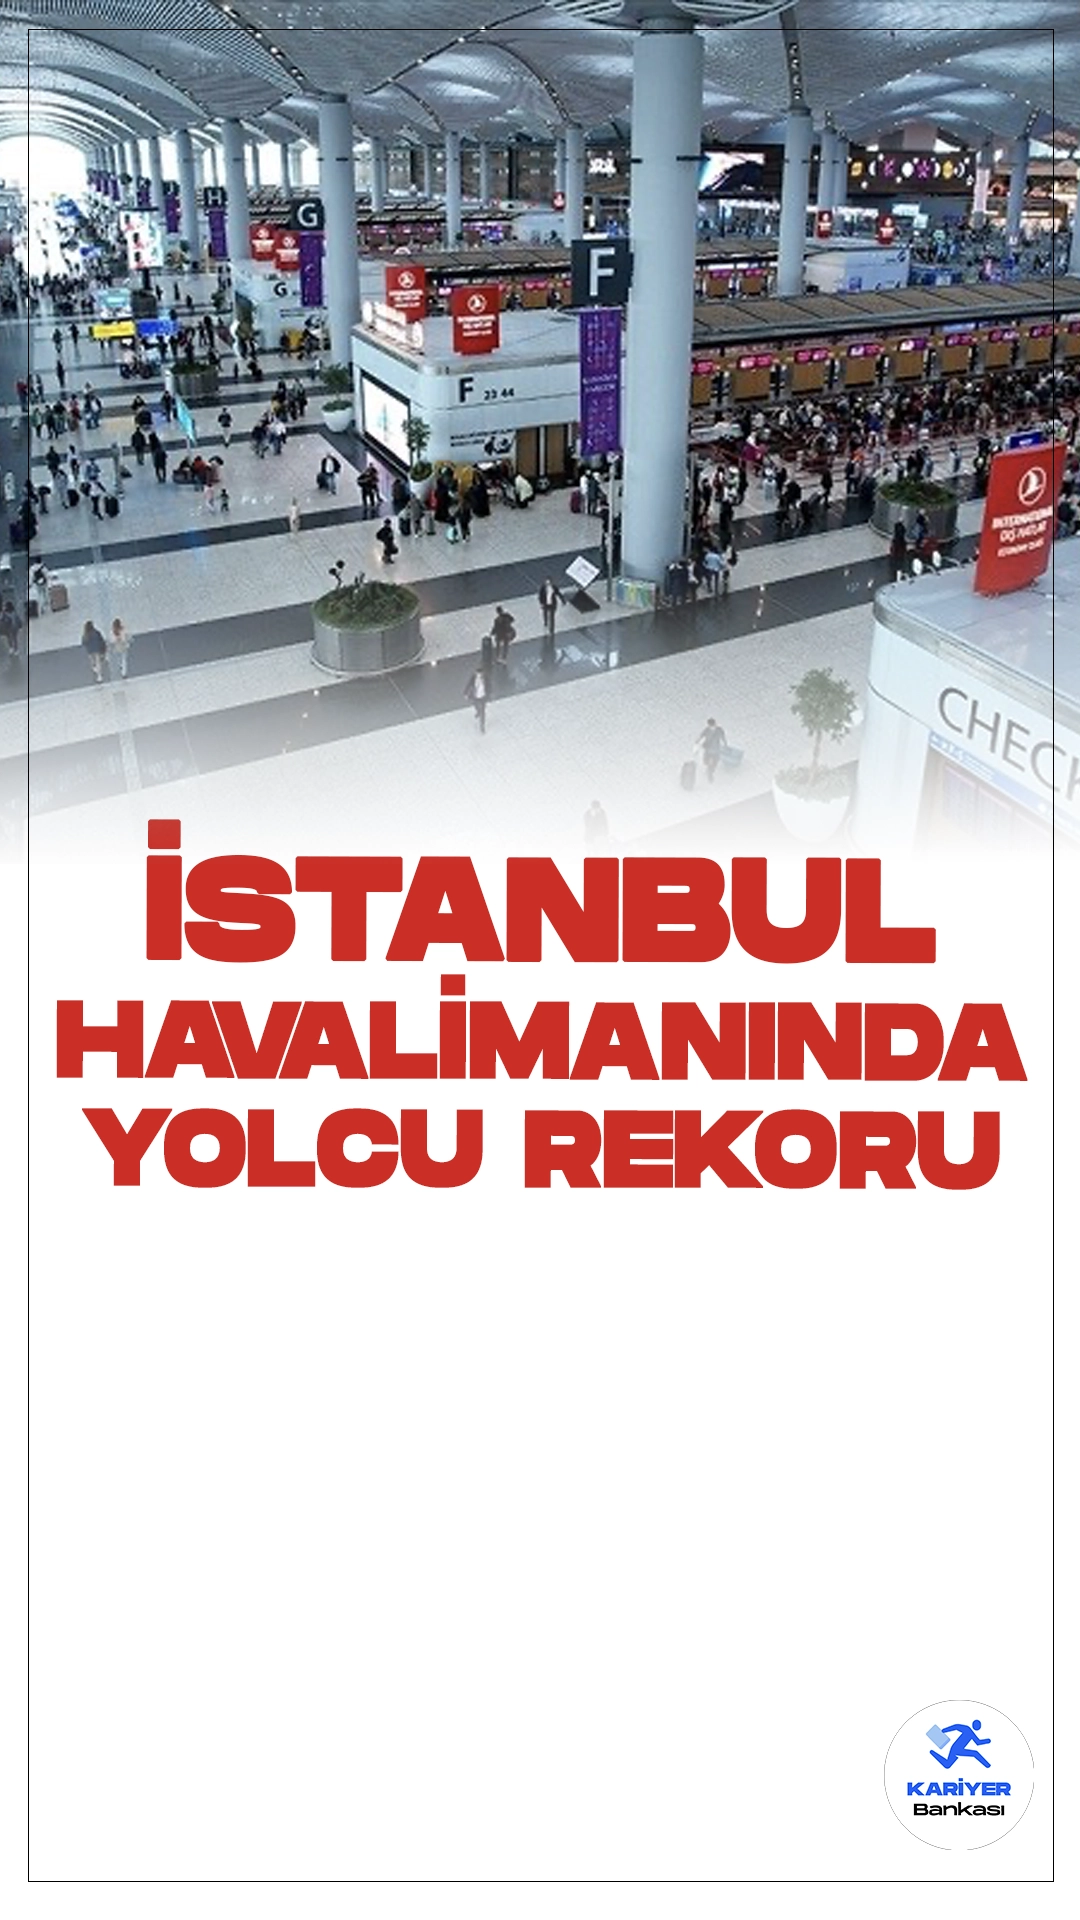 İstanbul Havalimanı'ndan Yolcu Rekoru.Dün İstanbul Havalimanı'nda günlük 268 bin 275 yolcuyla rekor kırıldı. Ulaştırma ve Altyapı Bakanı Abdulkadir Uraloğlu, İstanbul Havalimanı'ndaki rekor yolcu trafiğine ilişkin bilgi verdi.